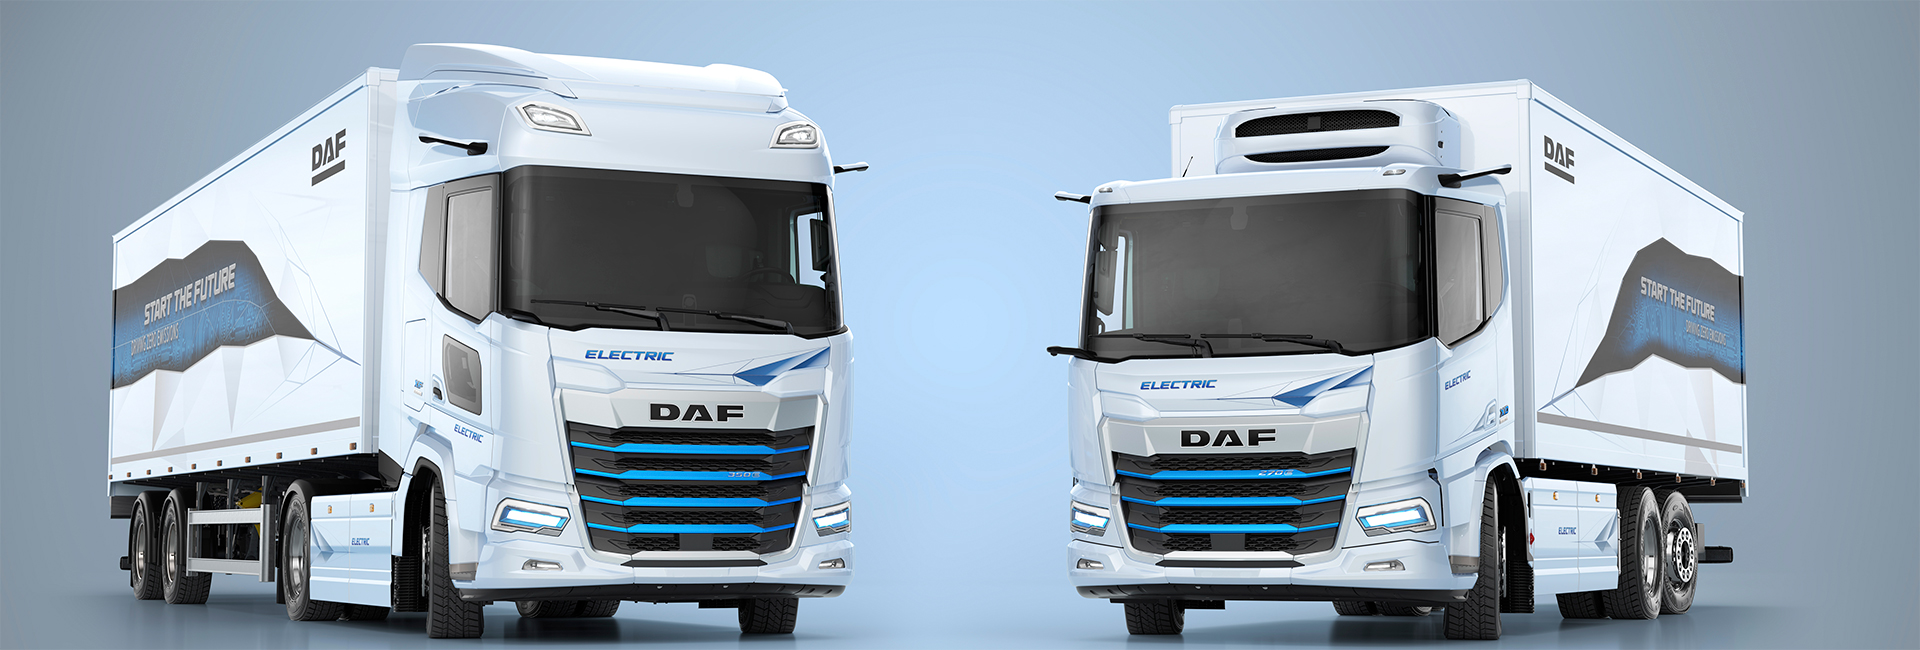 Welcome to DAF Trucks Corporate – Driven by Quality - DAF Trucks N.V.